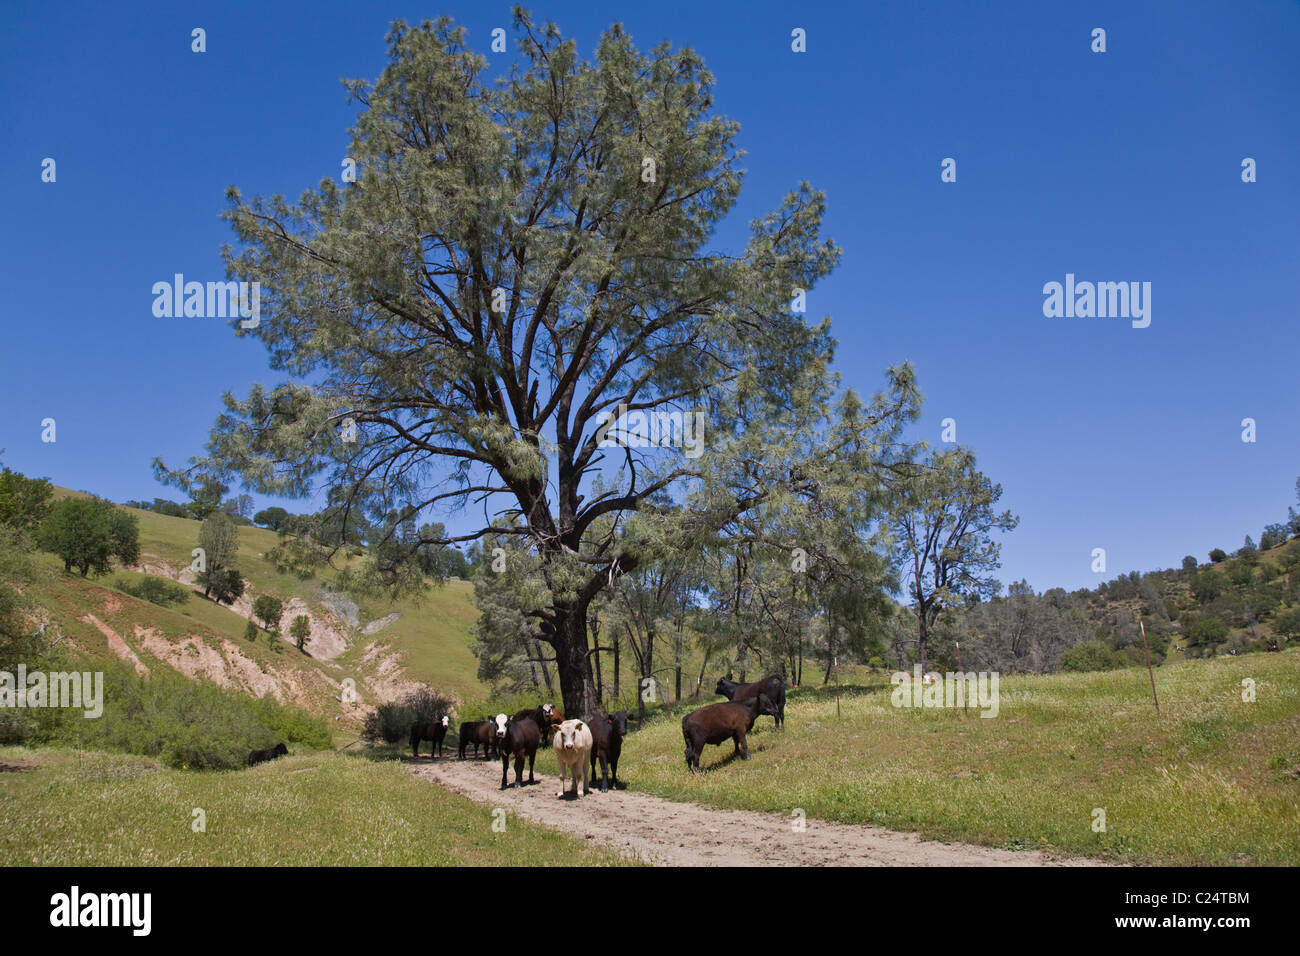 Le RS Guest Ranch est un ranch et pavillon de chasse situé à Paicines, Californie près de King City Banque D'Images